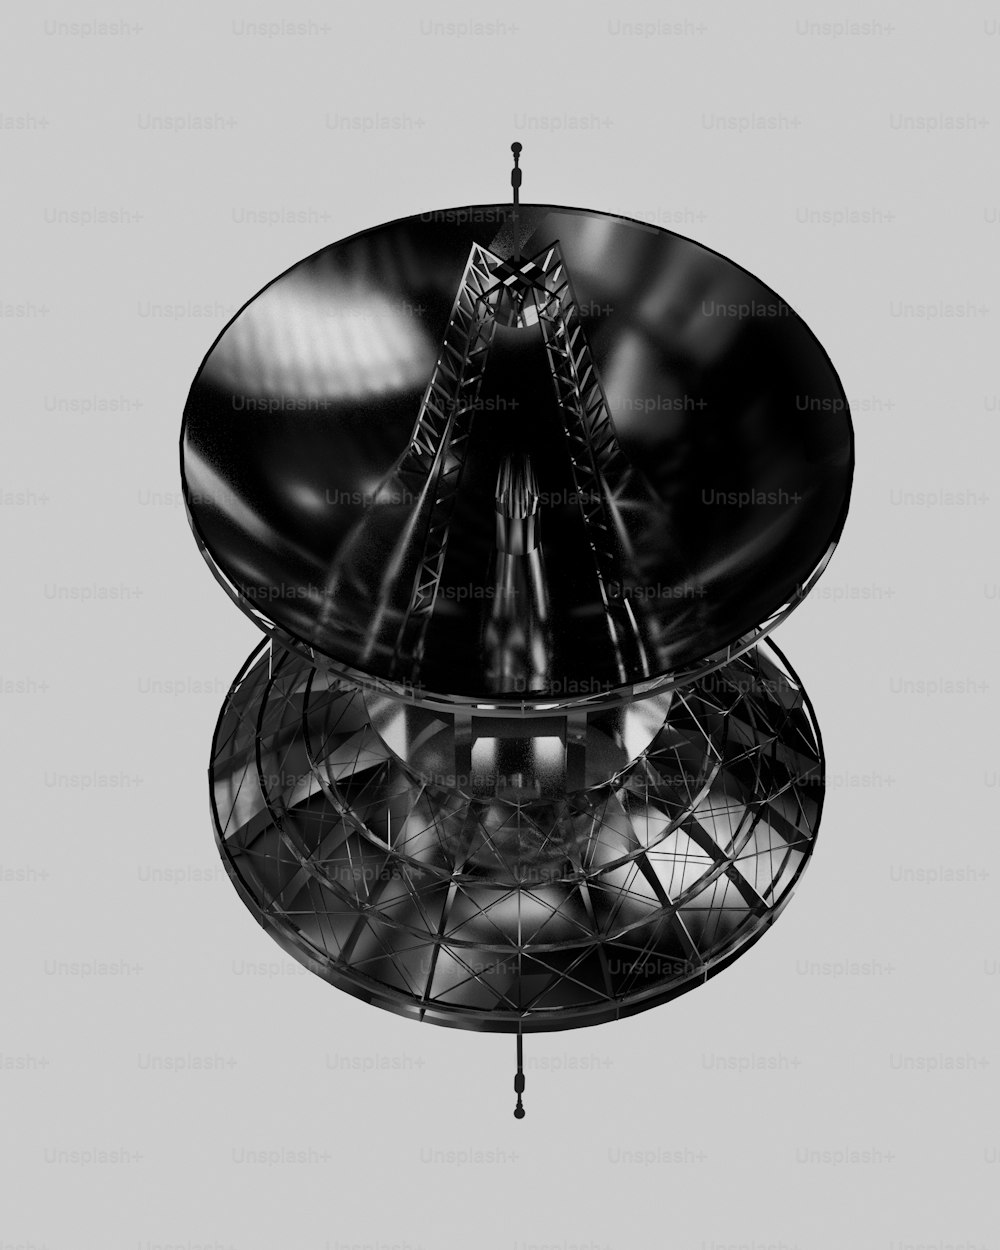 Una foto en blanco y negro de una antena parabólica